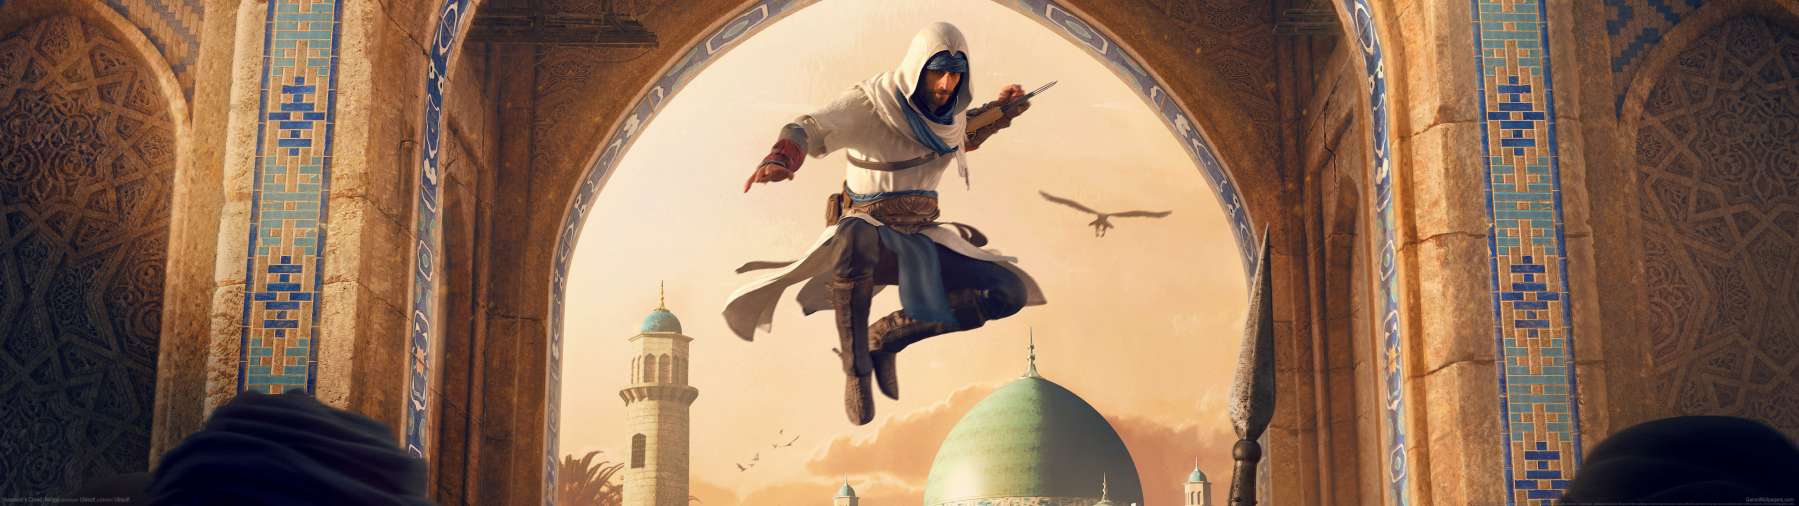 Assassin's Creed: Mirage superwide fondo de escritorio 01